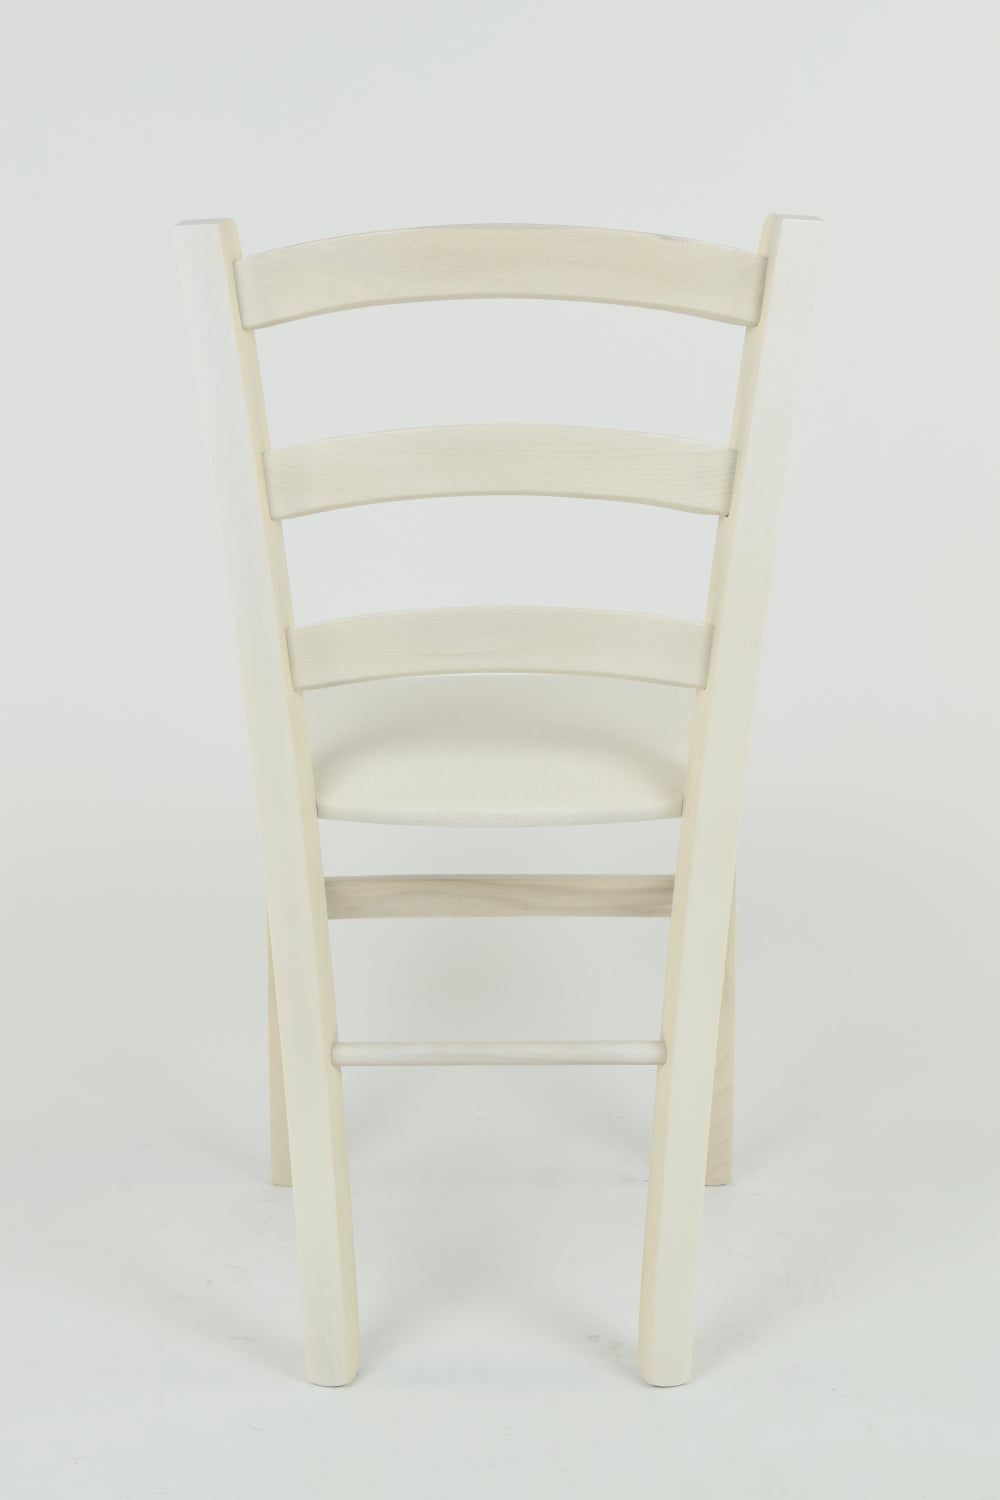 Tommychairs - Set 4 sillas de Cocina y Comedor Venice, Estructura en Madera de Haya Color anilina Blanca y Asiento tapizado en Tejido Color Marfil